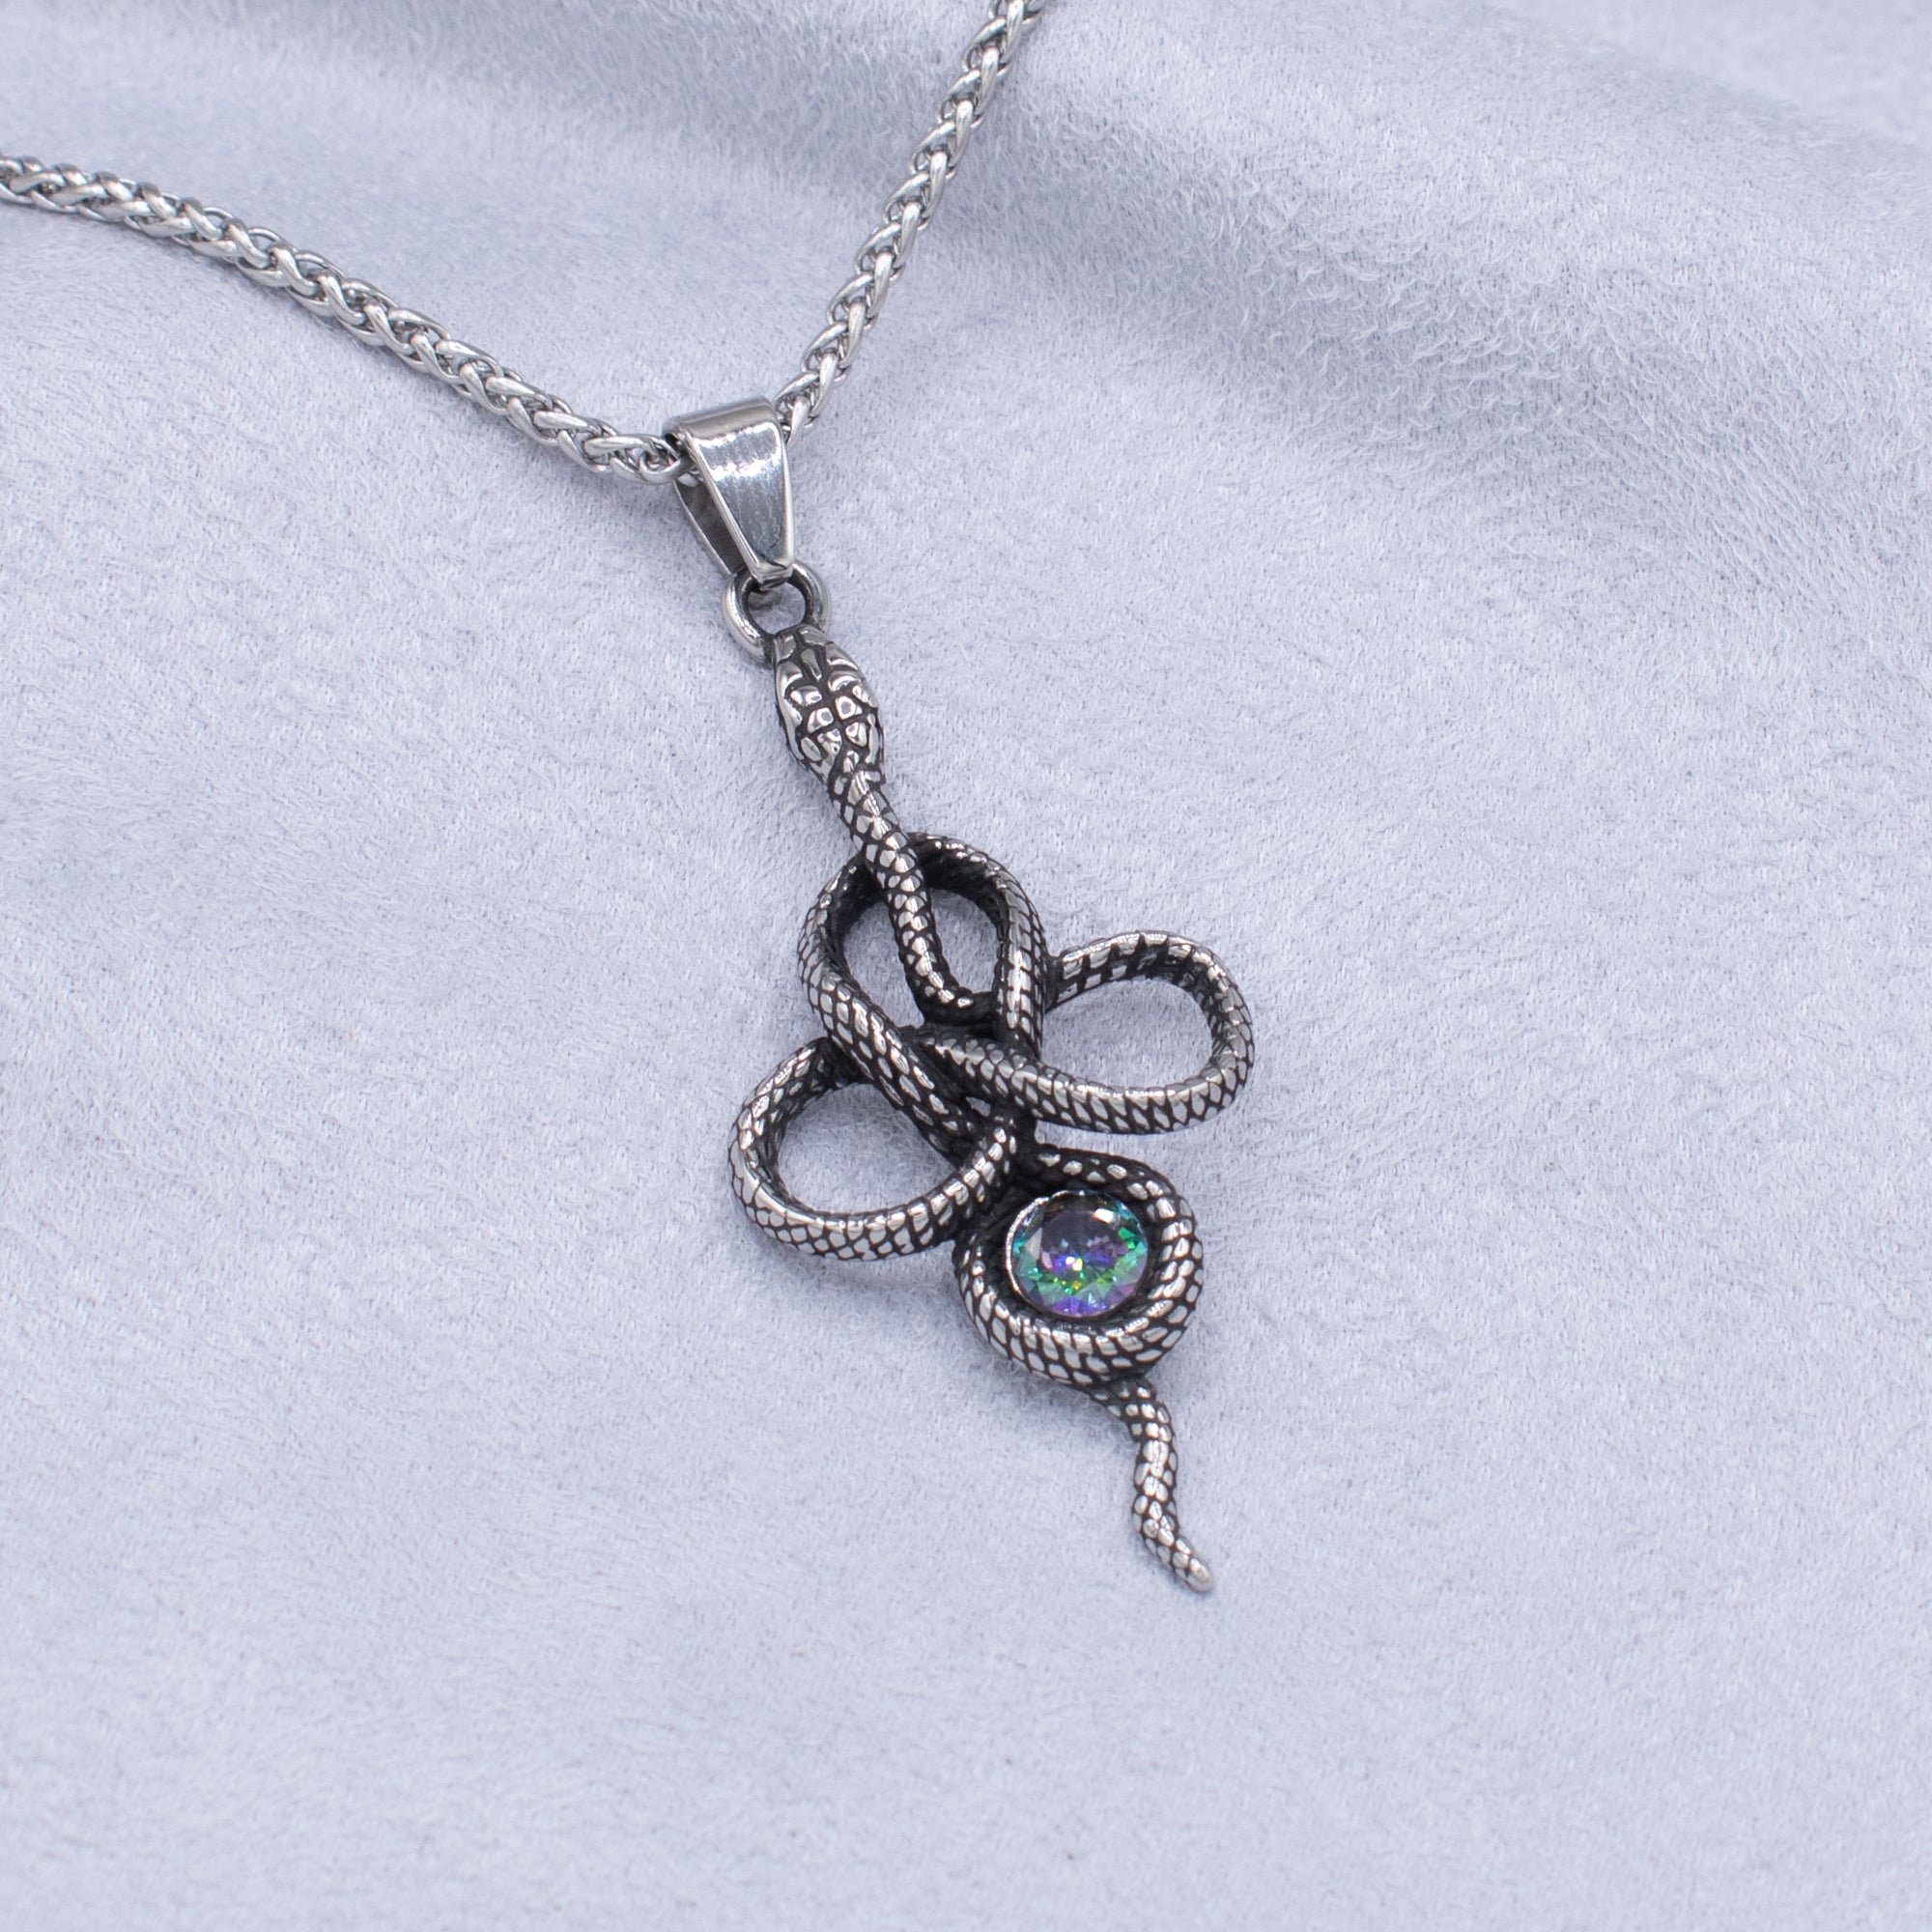 Nagamani Snake Pendant Necklace